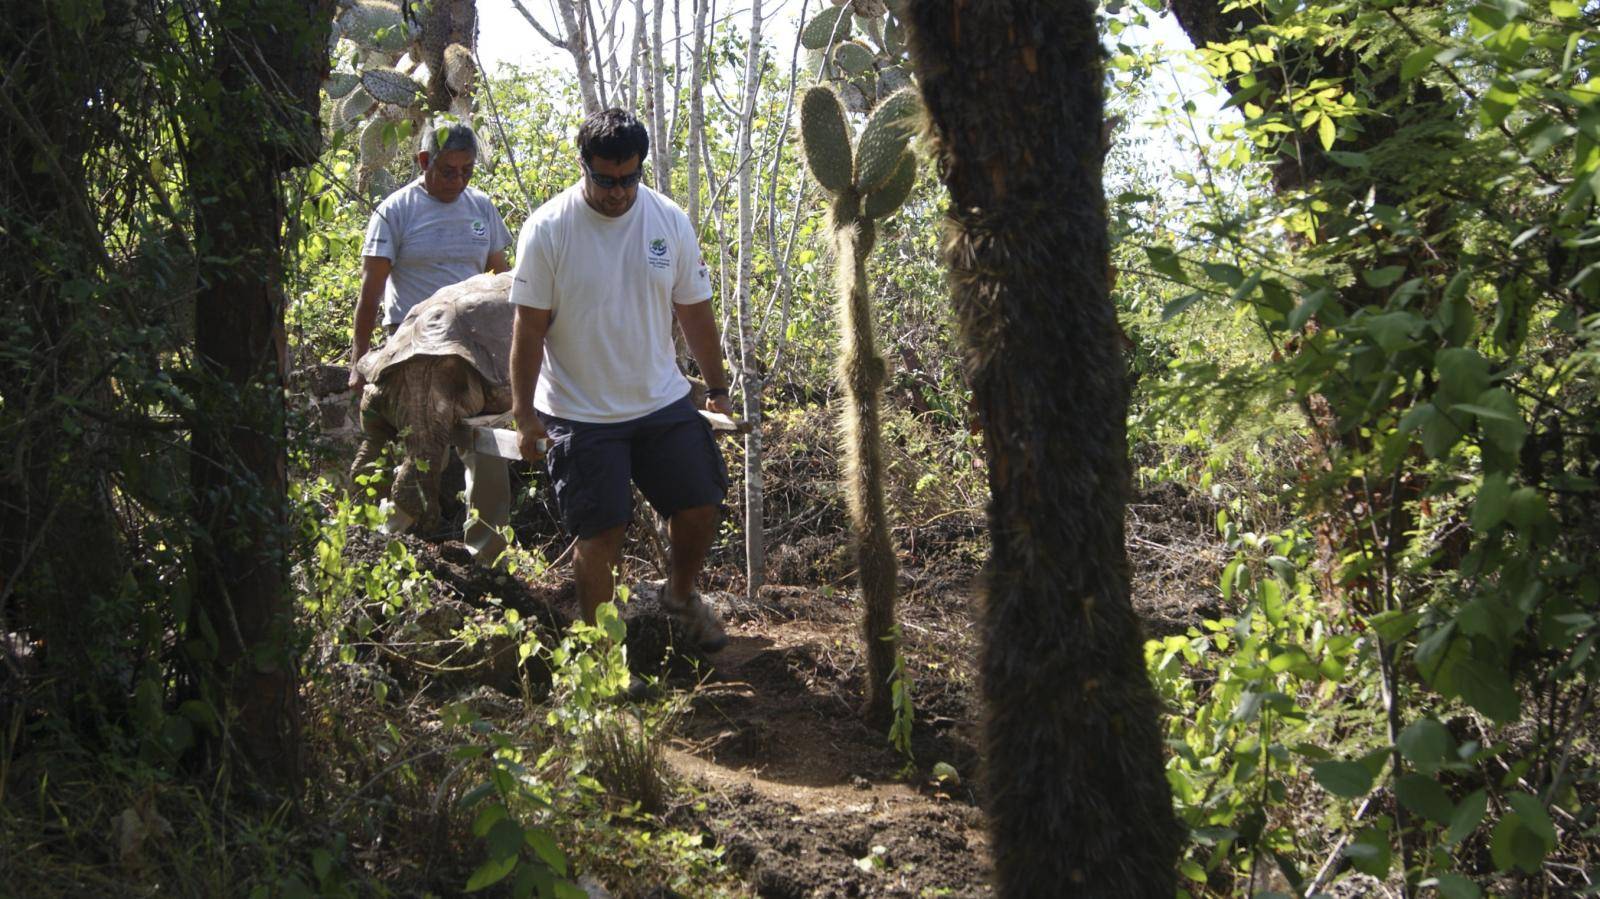 Last specimen of subspecies of giant tortoise dies in Galapagos